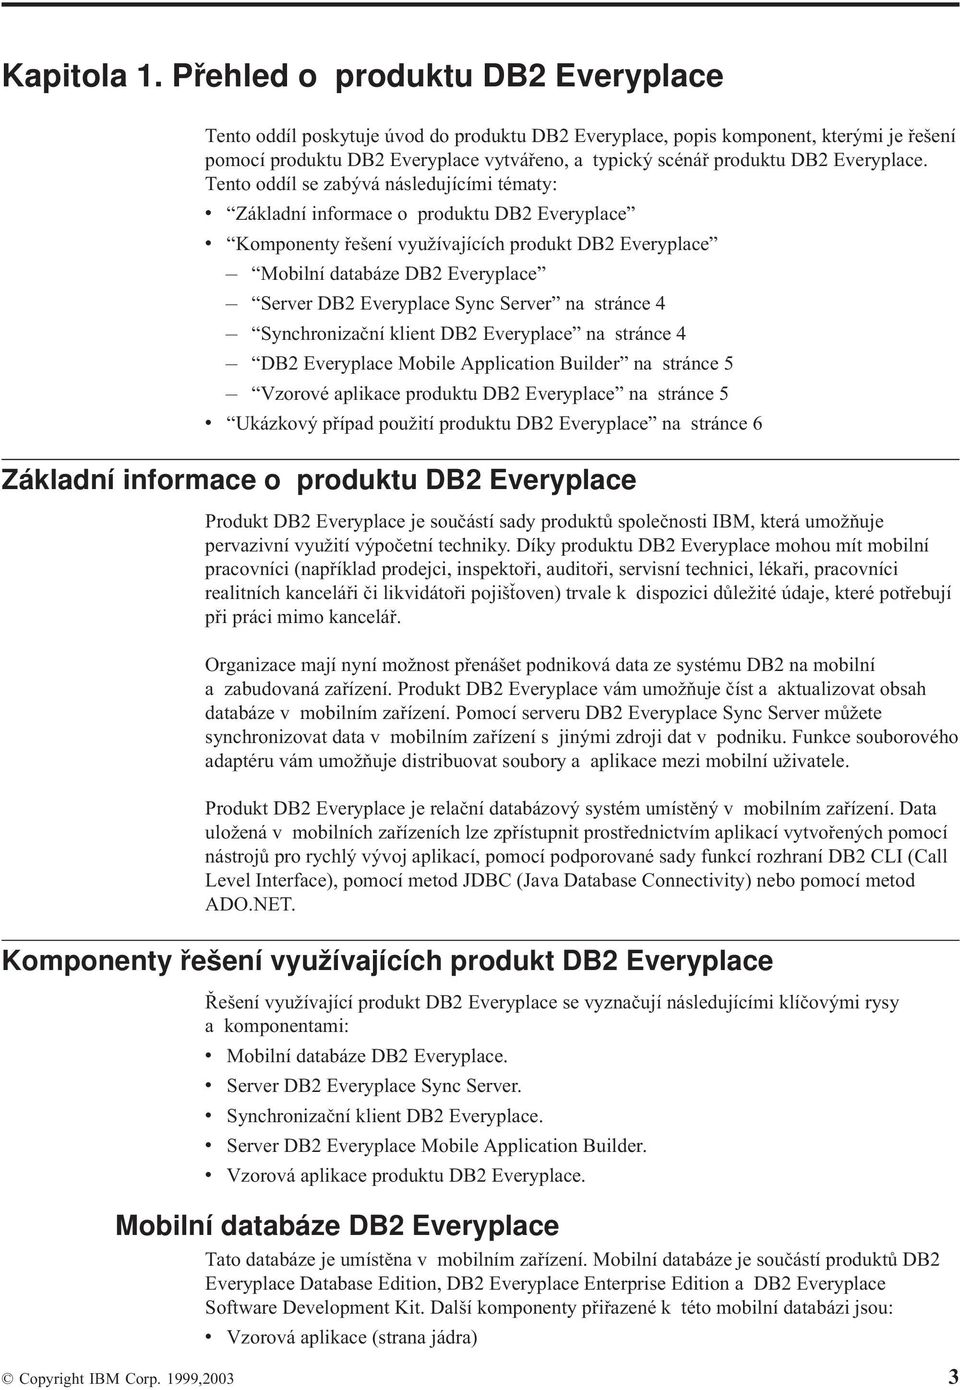 Tento oddíl se zabýá následujícími tématy: Základní informace o produktu DB2 Eeryplace Komponenty řešení yužíajících produkt DB2 Eeryplace Mobilní databáze DB2 Eeryplace Serer DB2 Eeryplace Sync